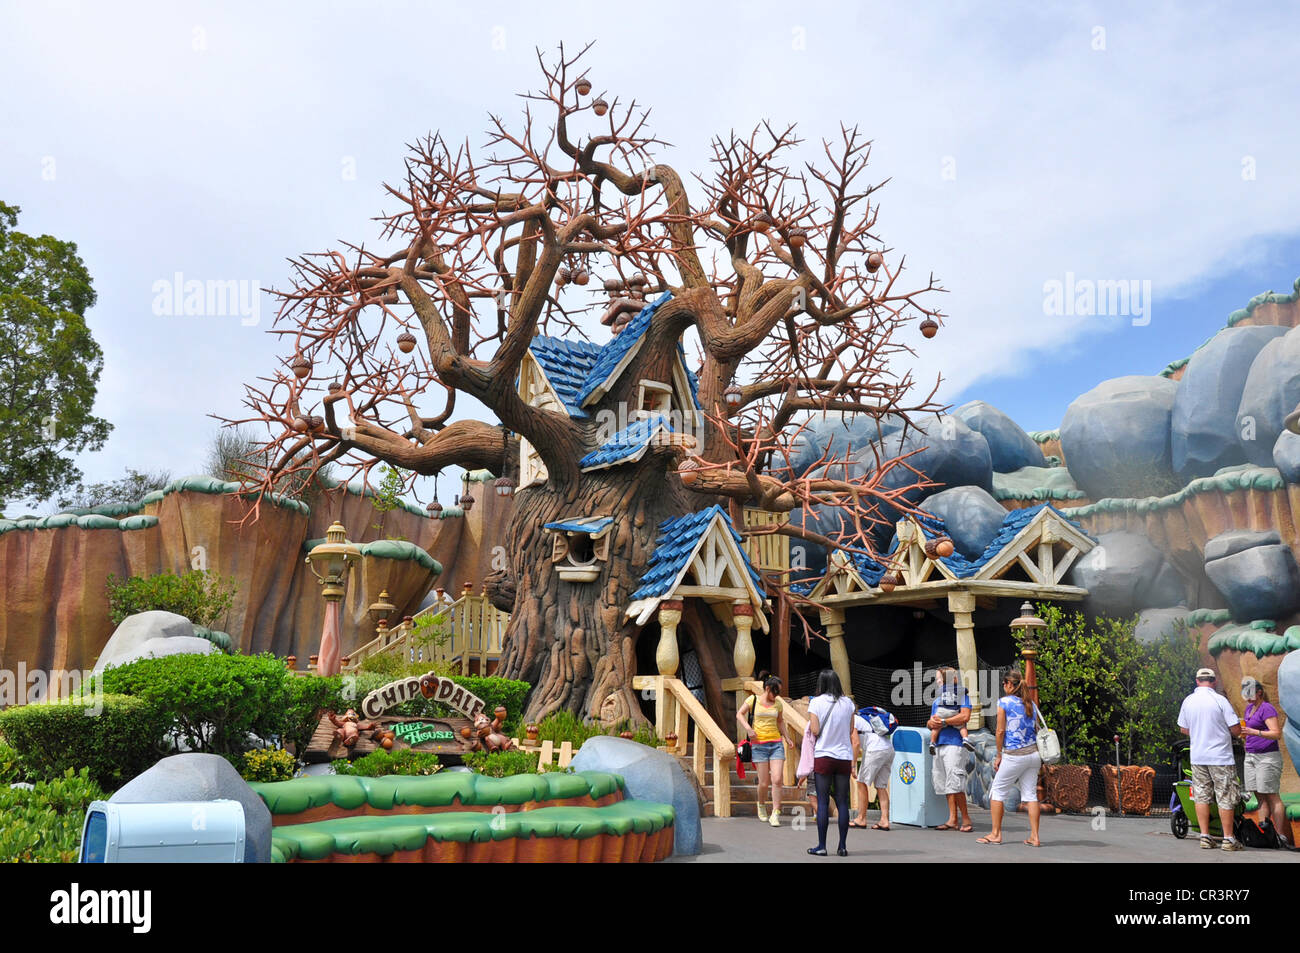 Familien genießen Chip 'n Dale's Tree House in Mickey's Toontown, Disneyland, Anaheim, Kalifornien, USA Stockfoto